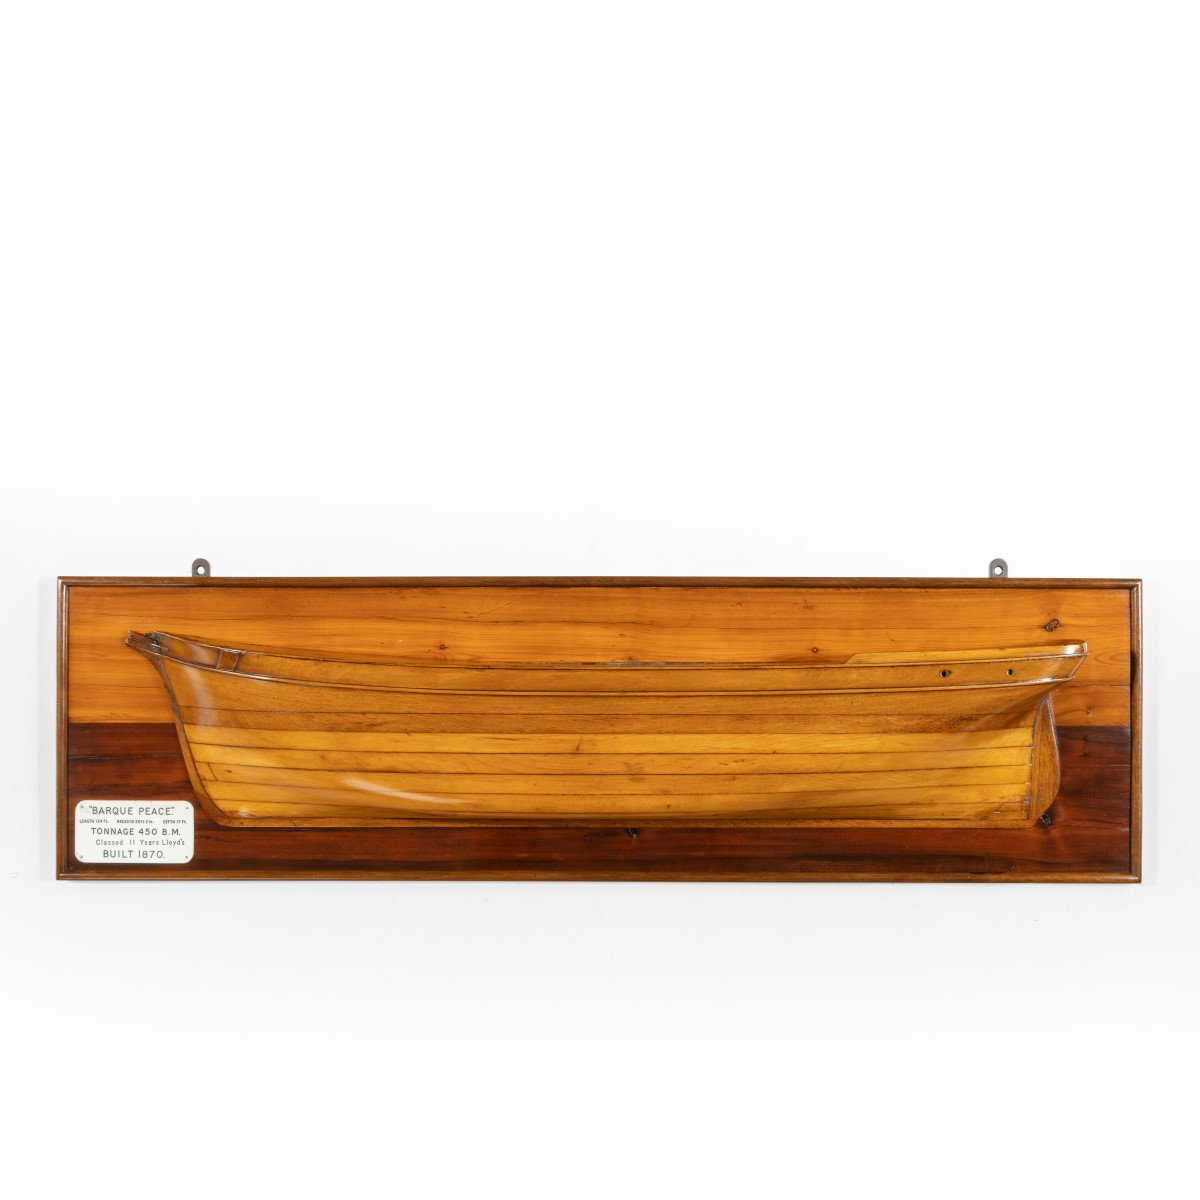 A fine half hull model of ‘Barque Peace’